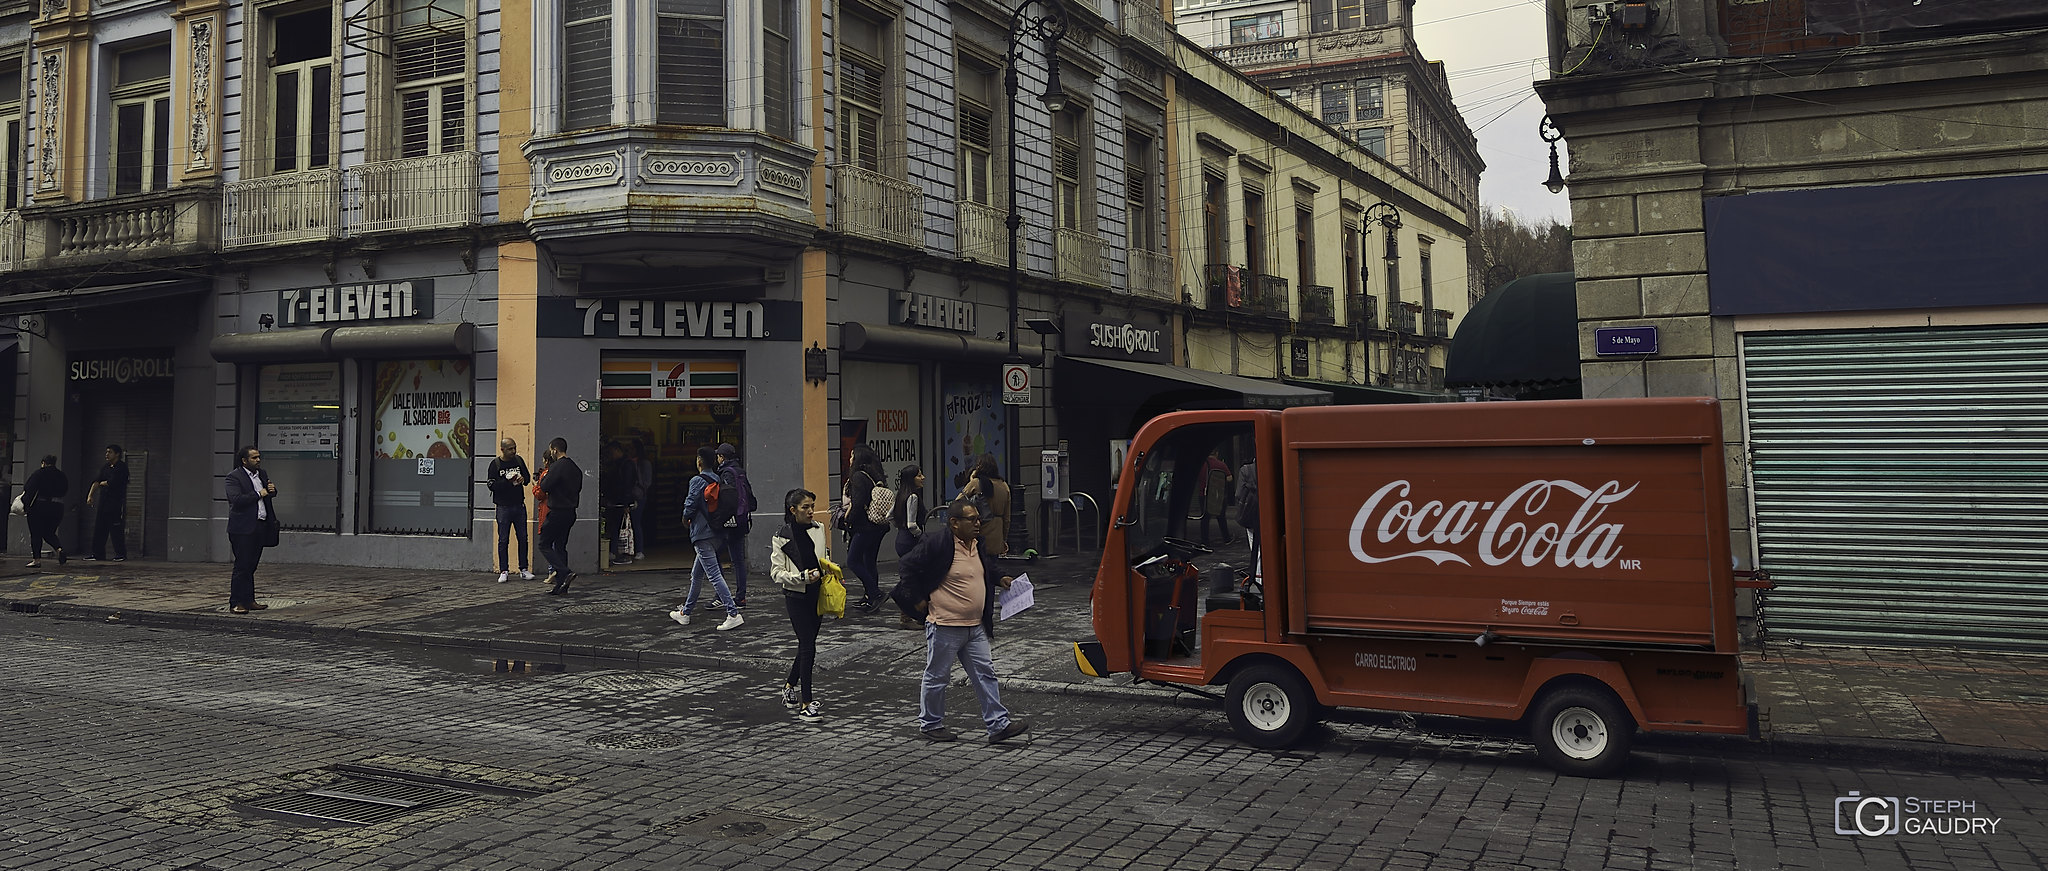 Coca Cola @ Mexico [Klicken Sie hier, um die Diashow zu starten]